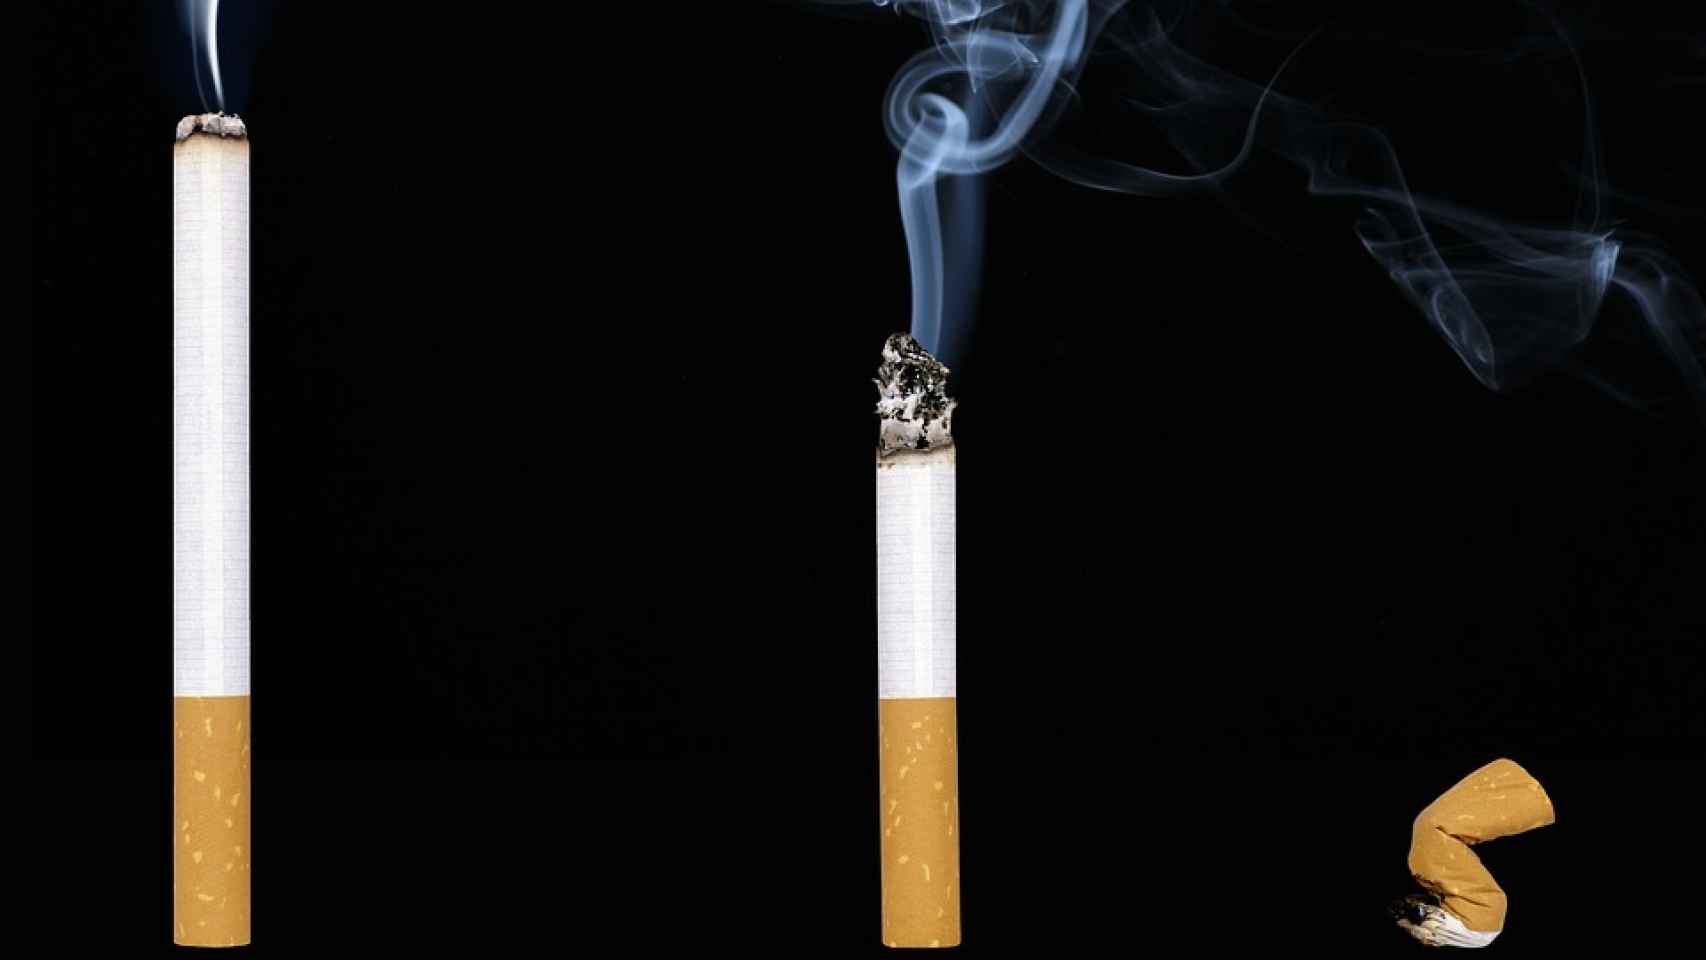 Mitos sobre dejar de fumar